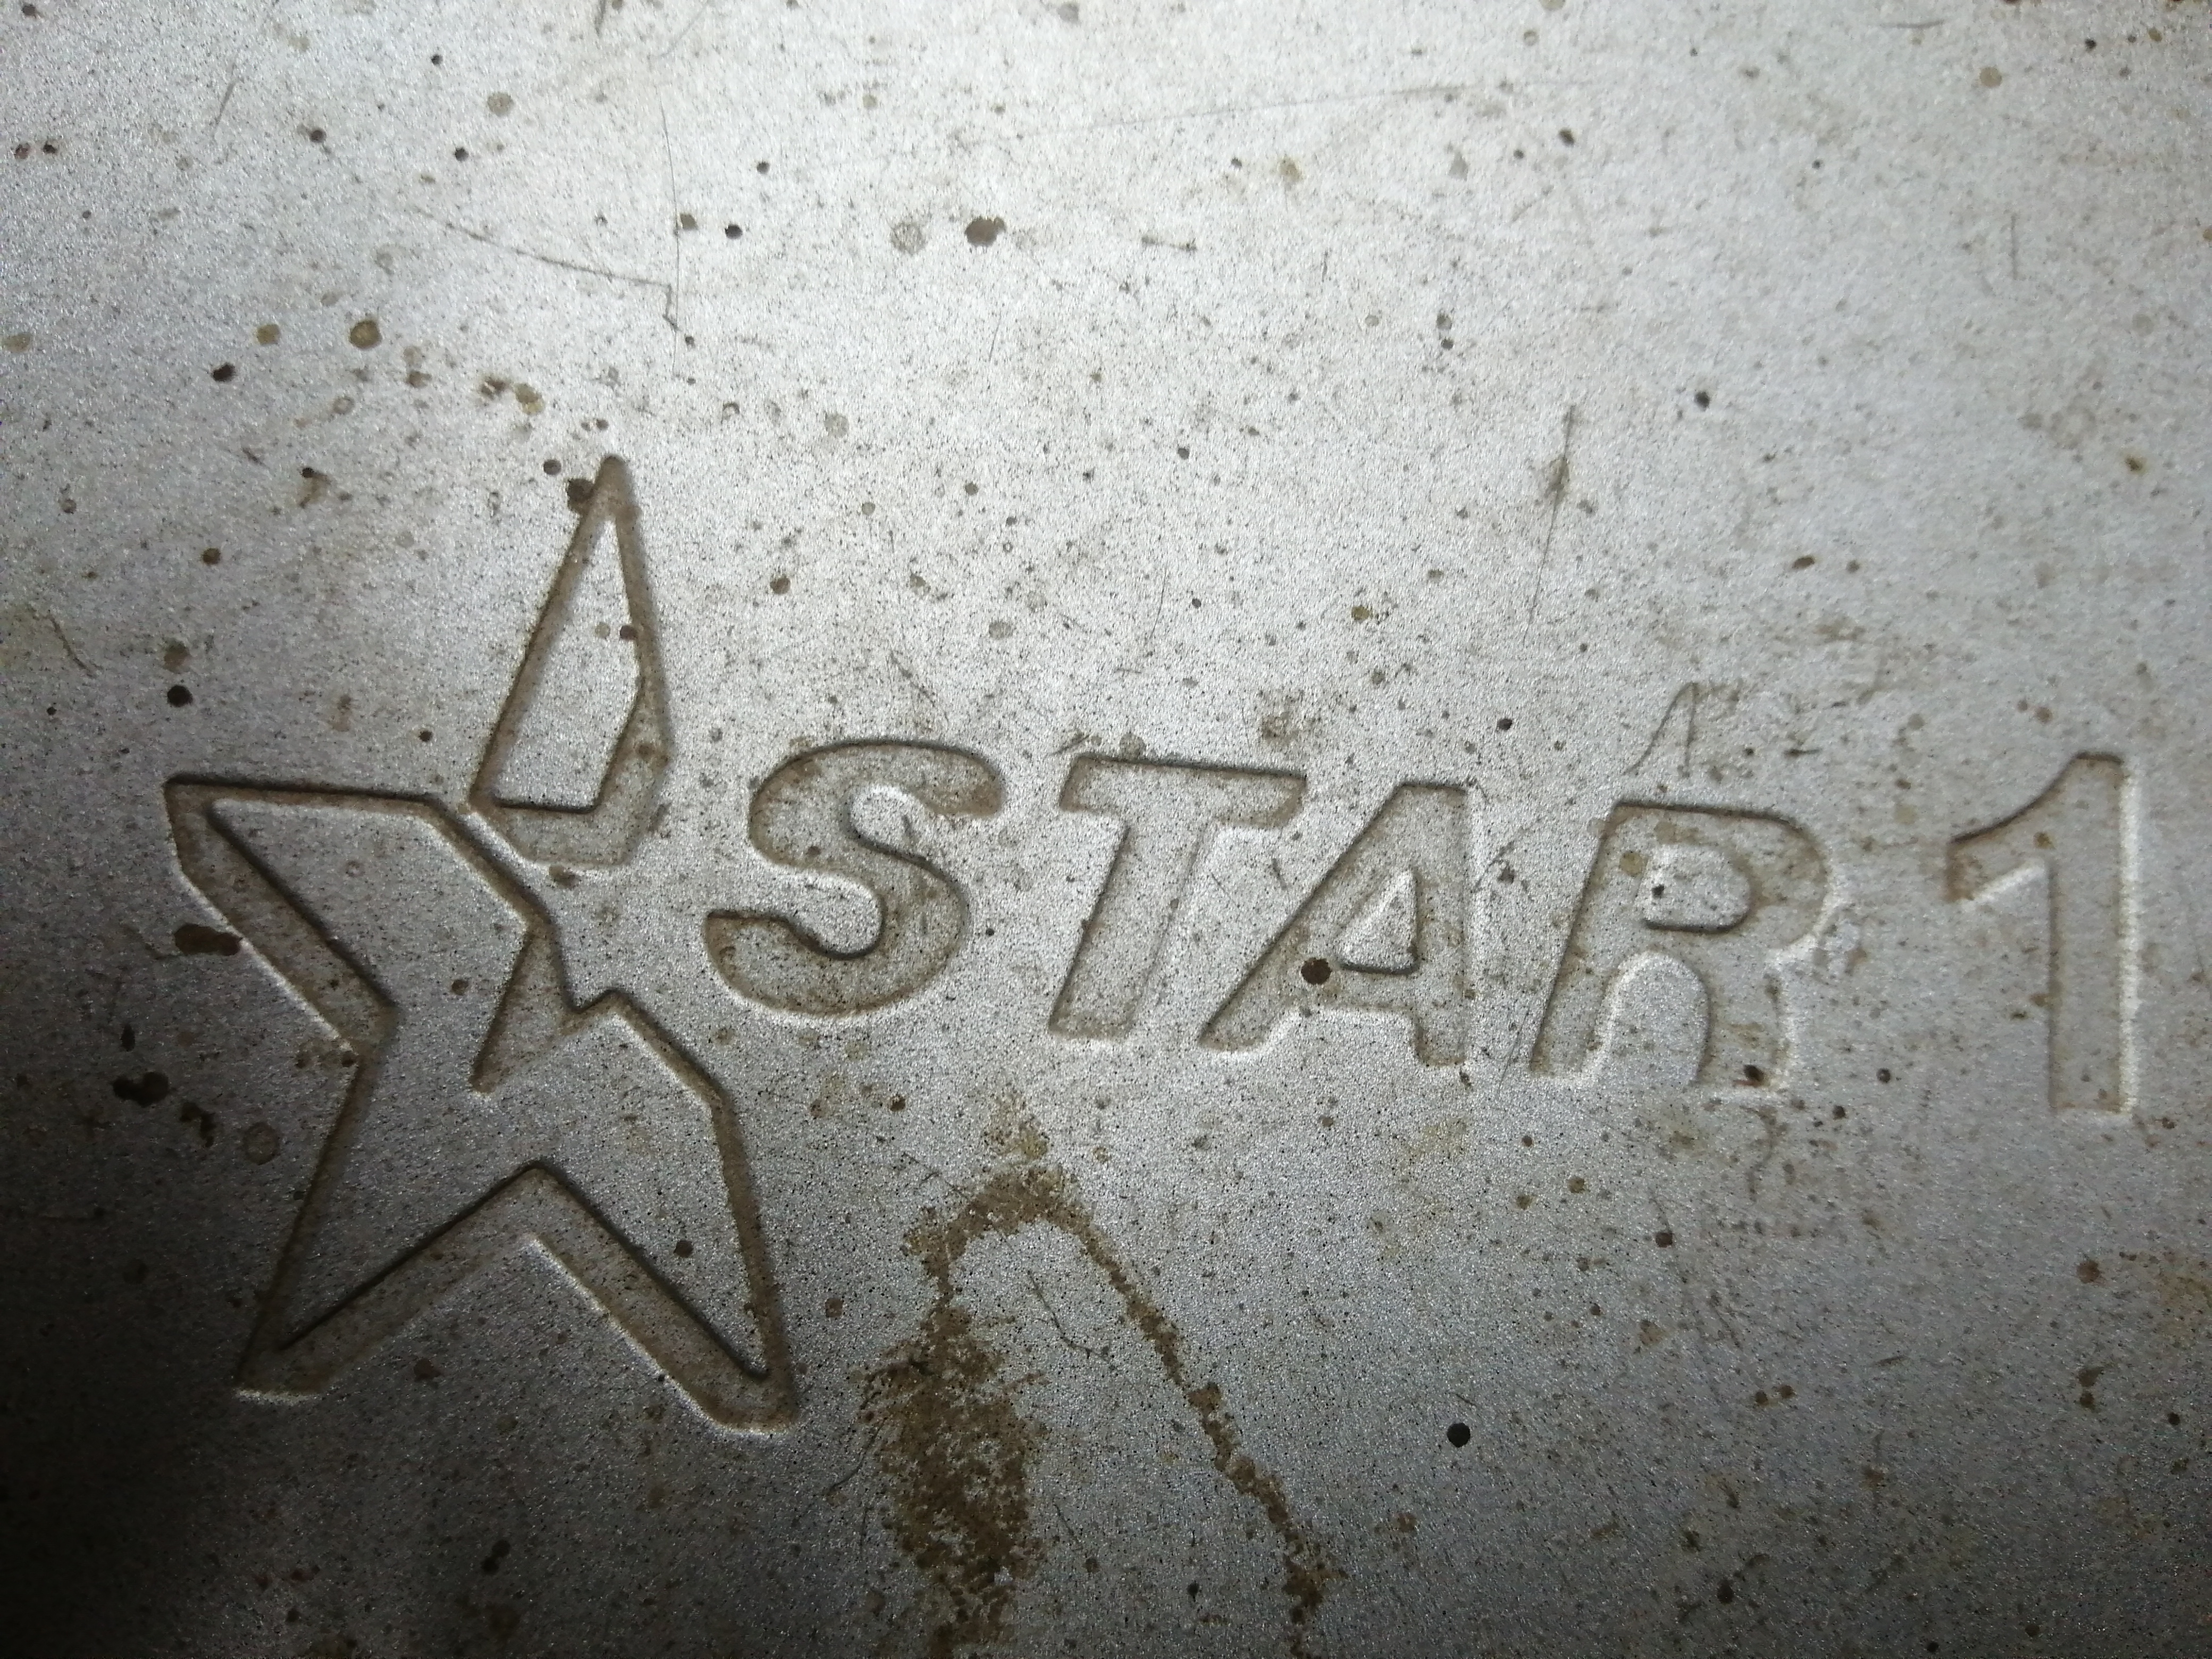   STAR1 S100   ALi  512 1.jpg